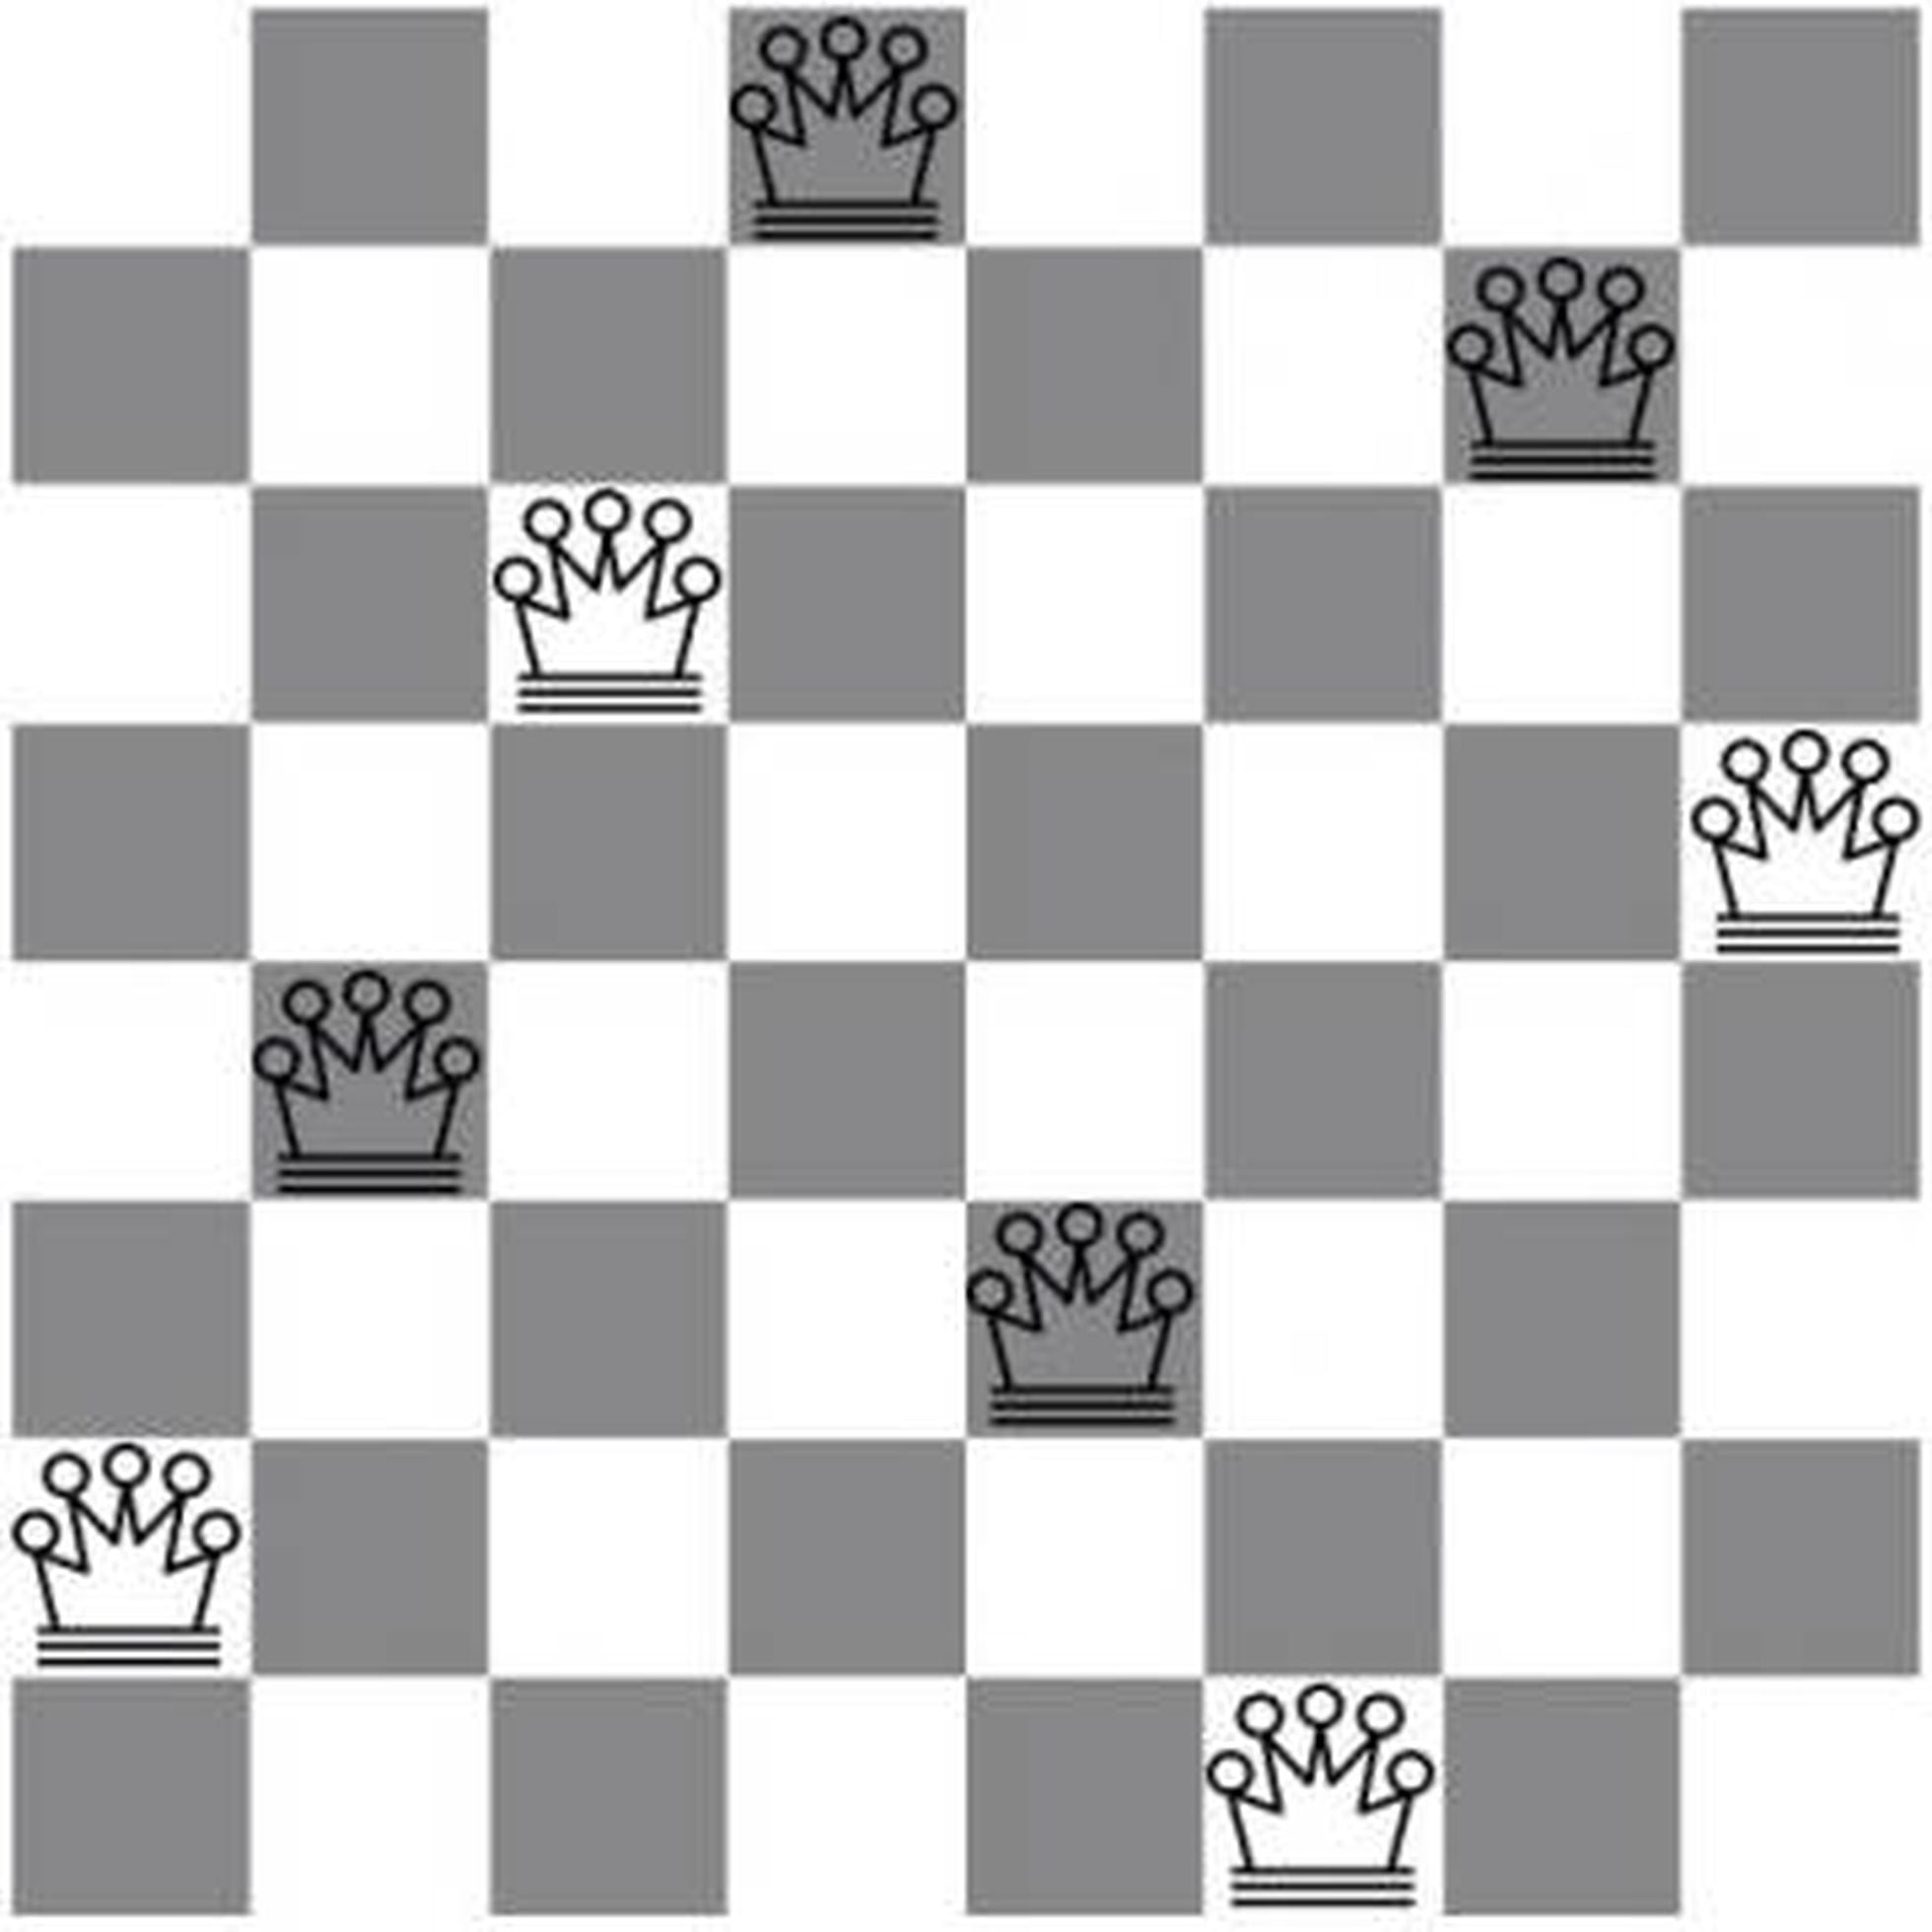 Você conhece algum problema de xadrez que seja difícil de resolver